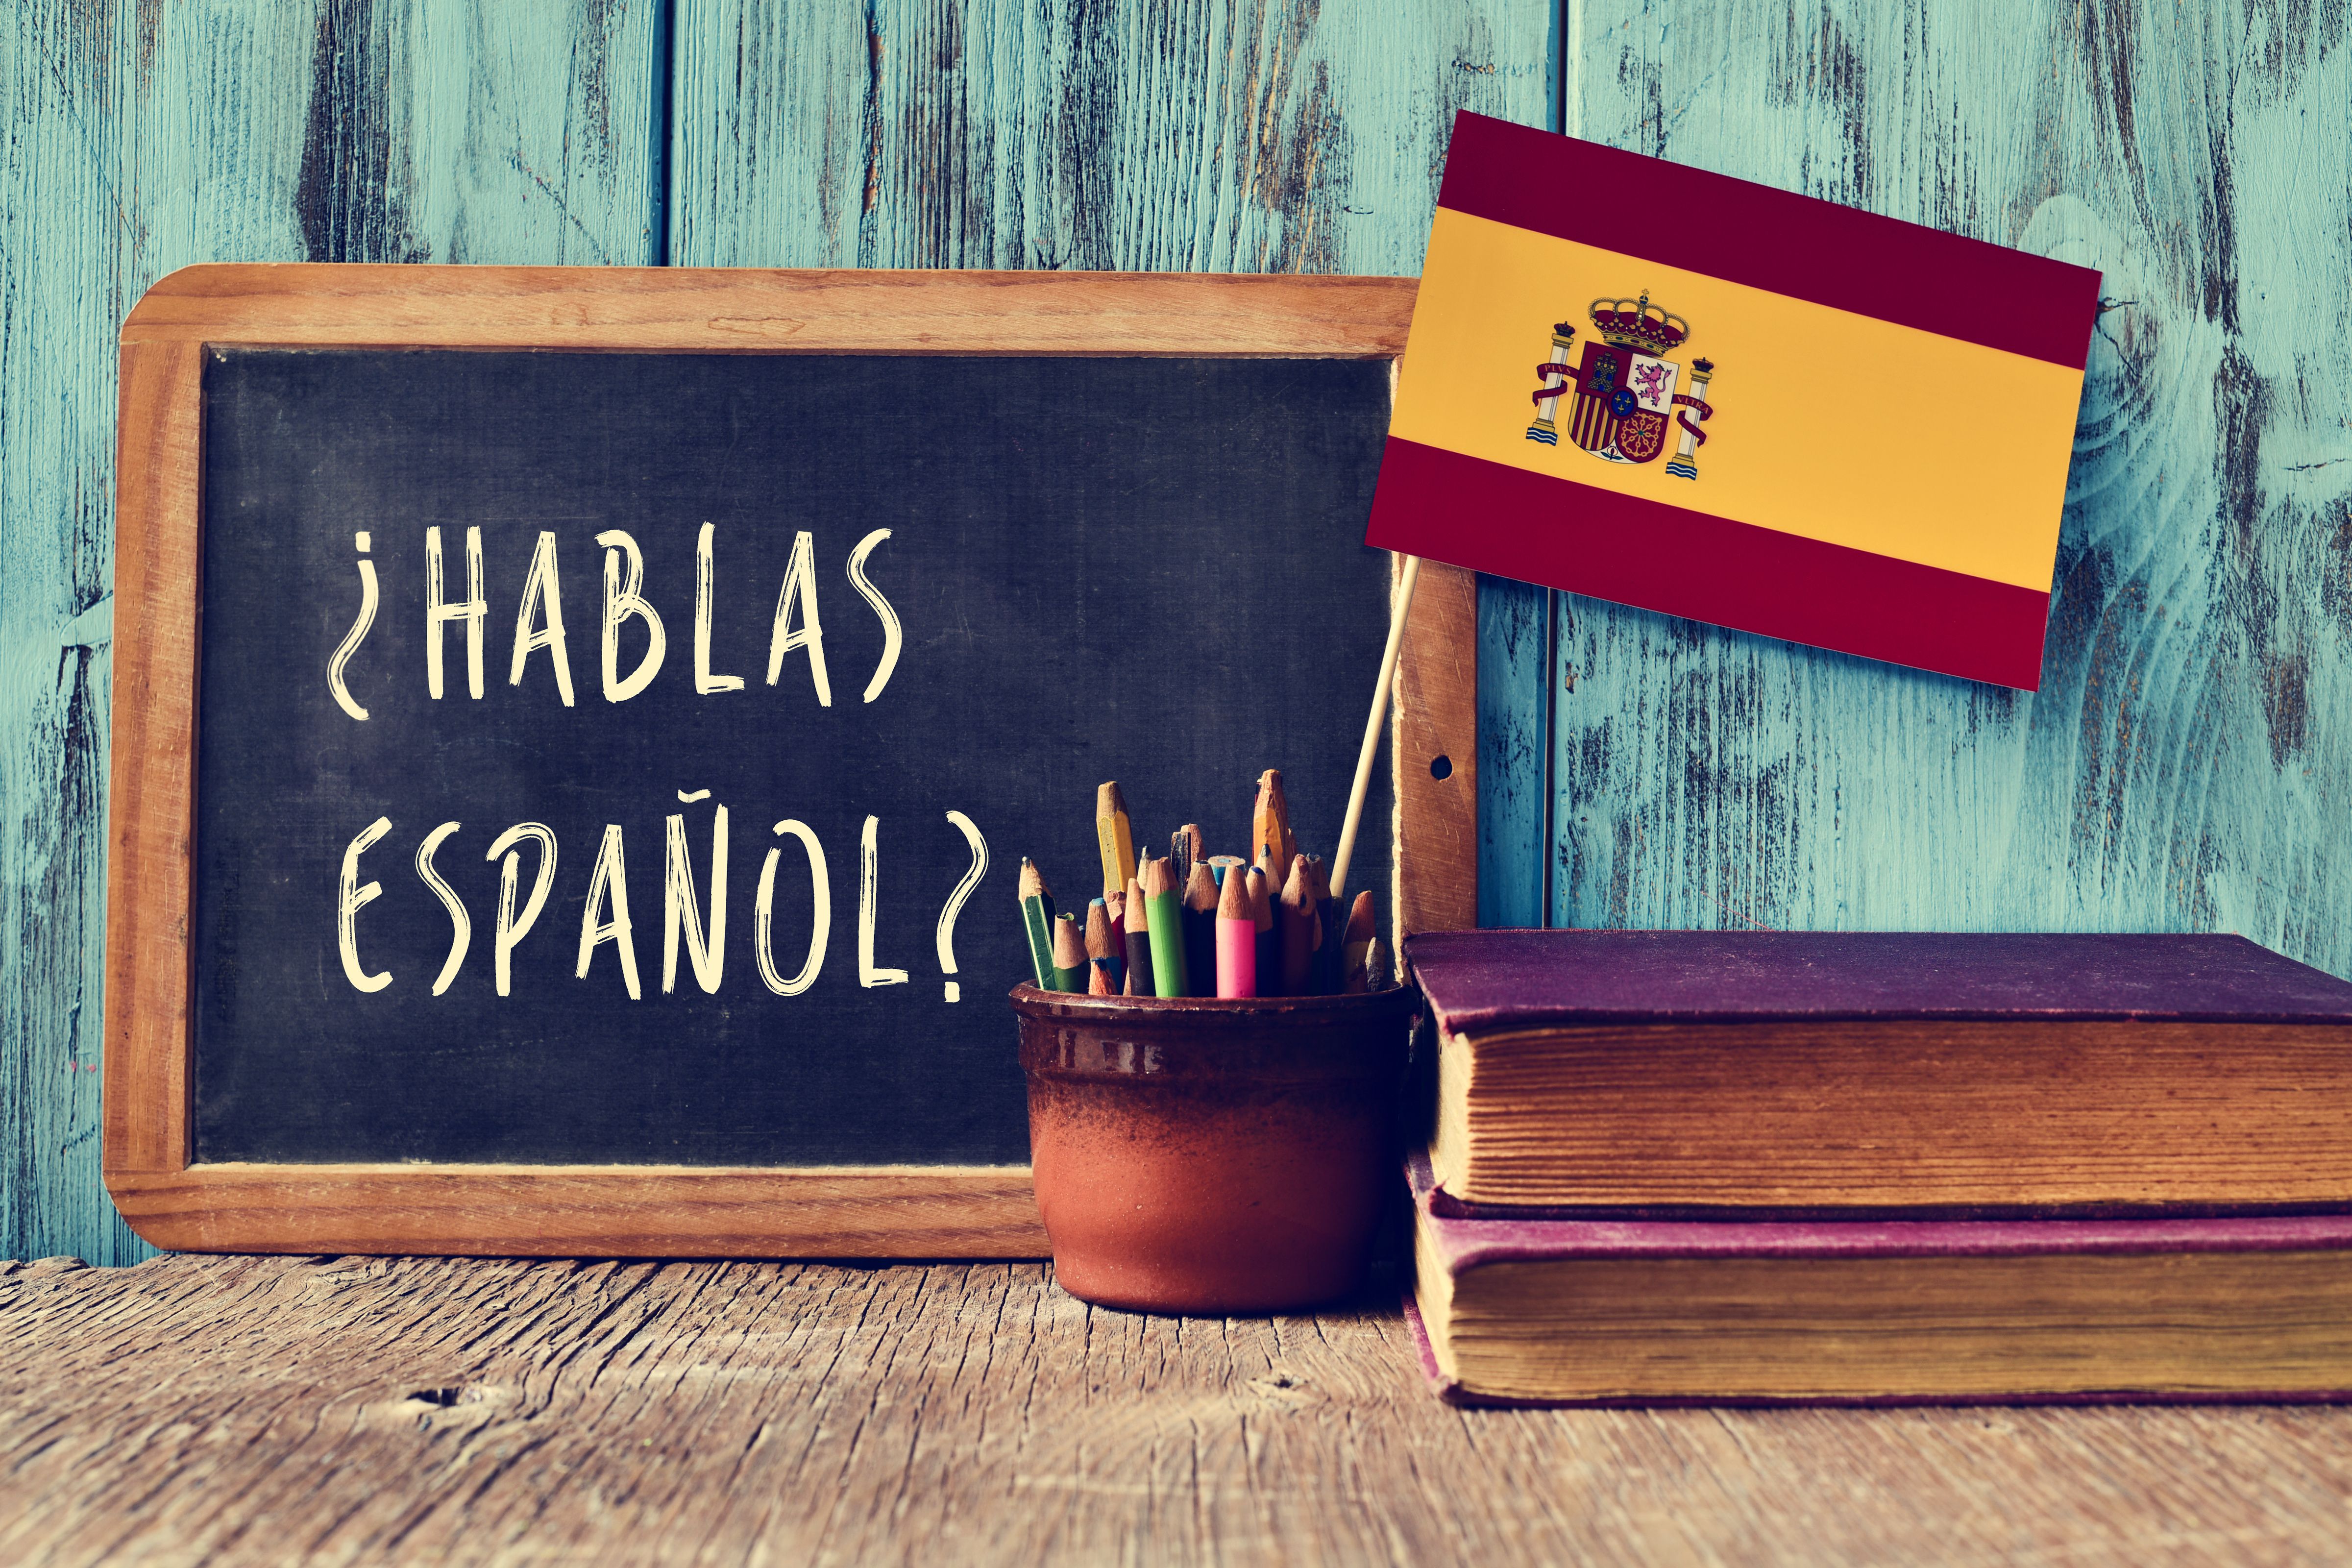 Spanish language image.